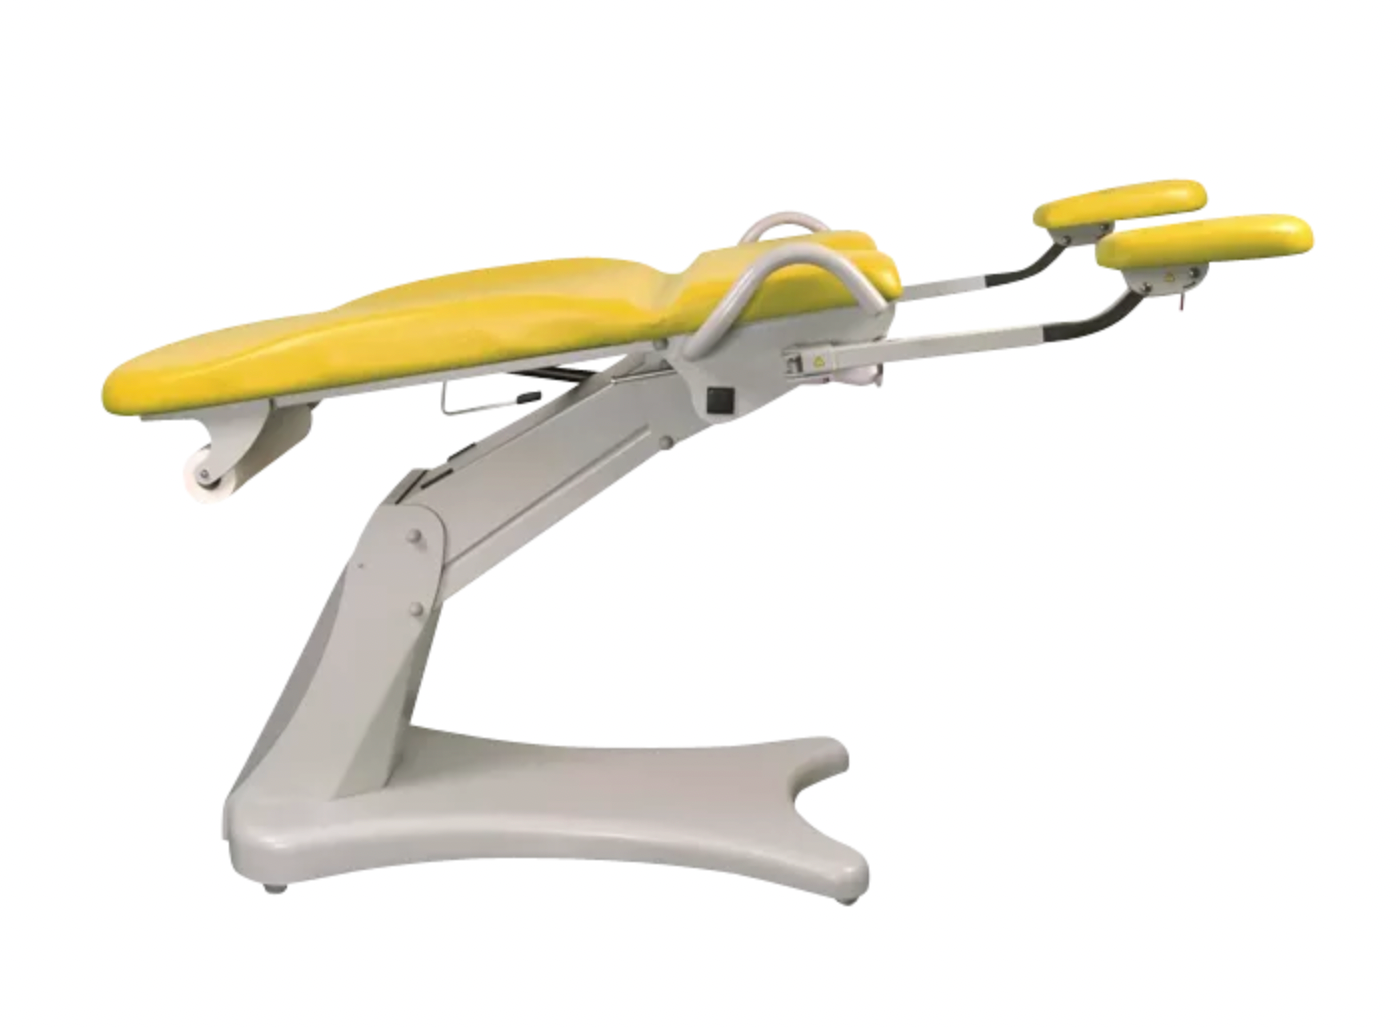 ELANSA fauteuil gynécologie jaune citron position allongé trendelembourg de chez Promotal made in France by Tablelya